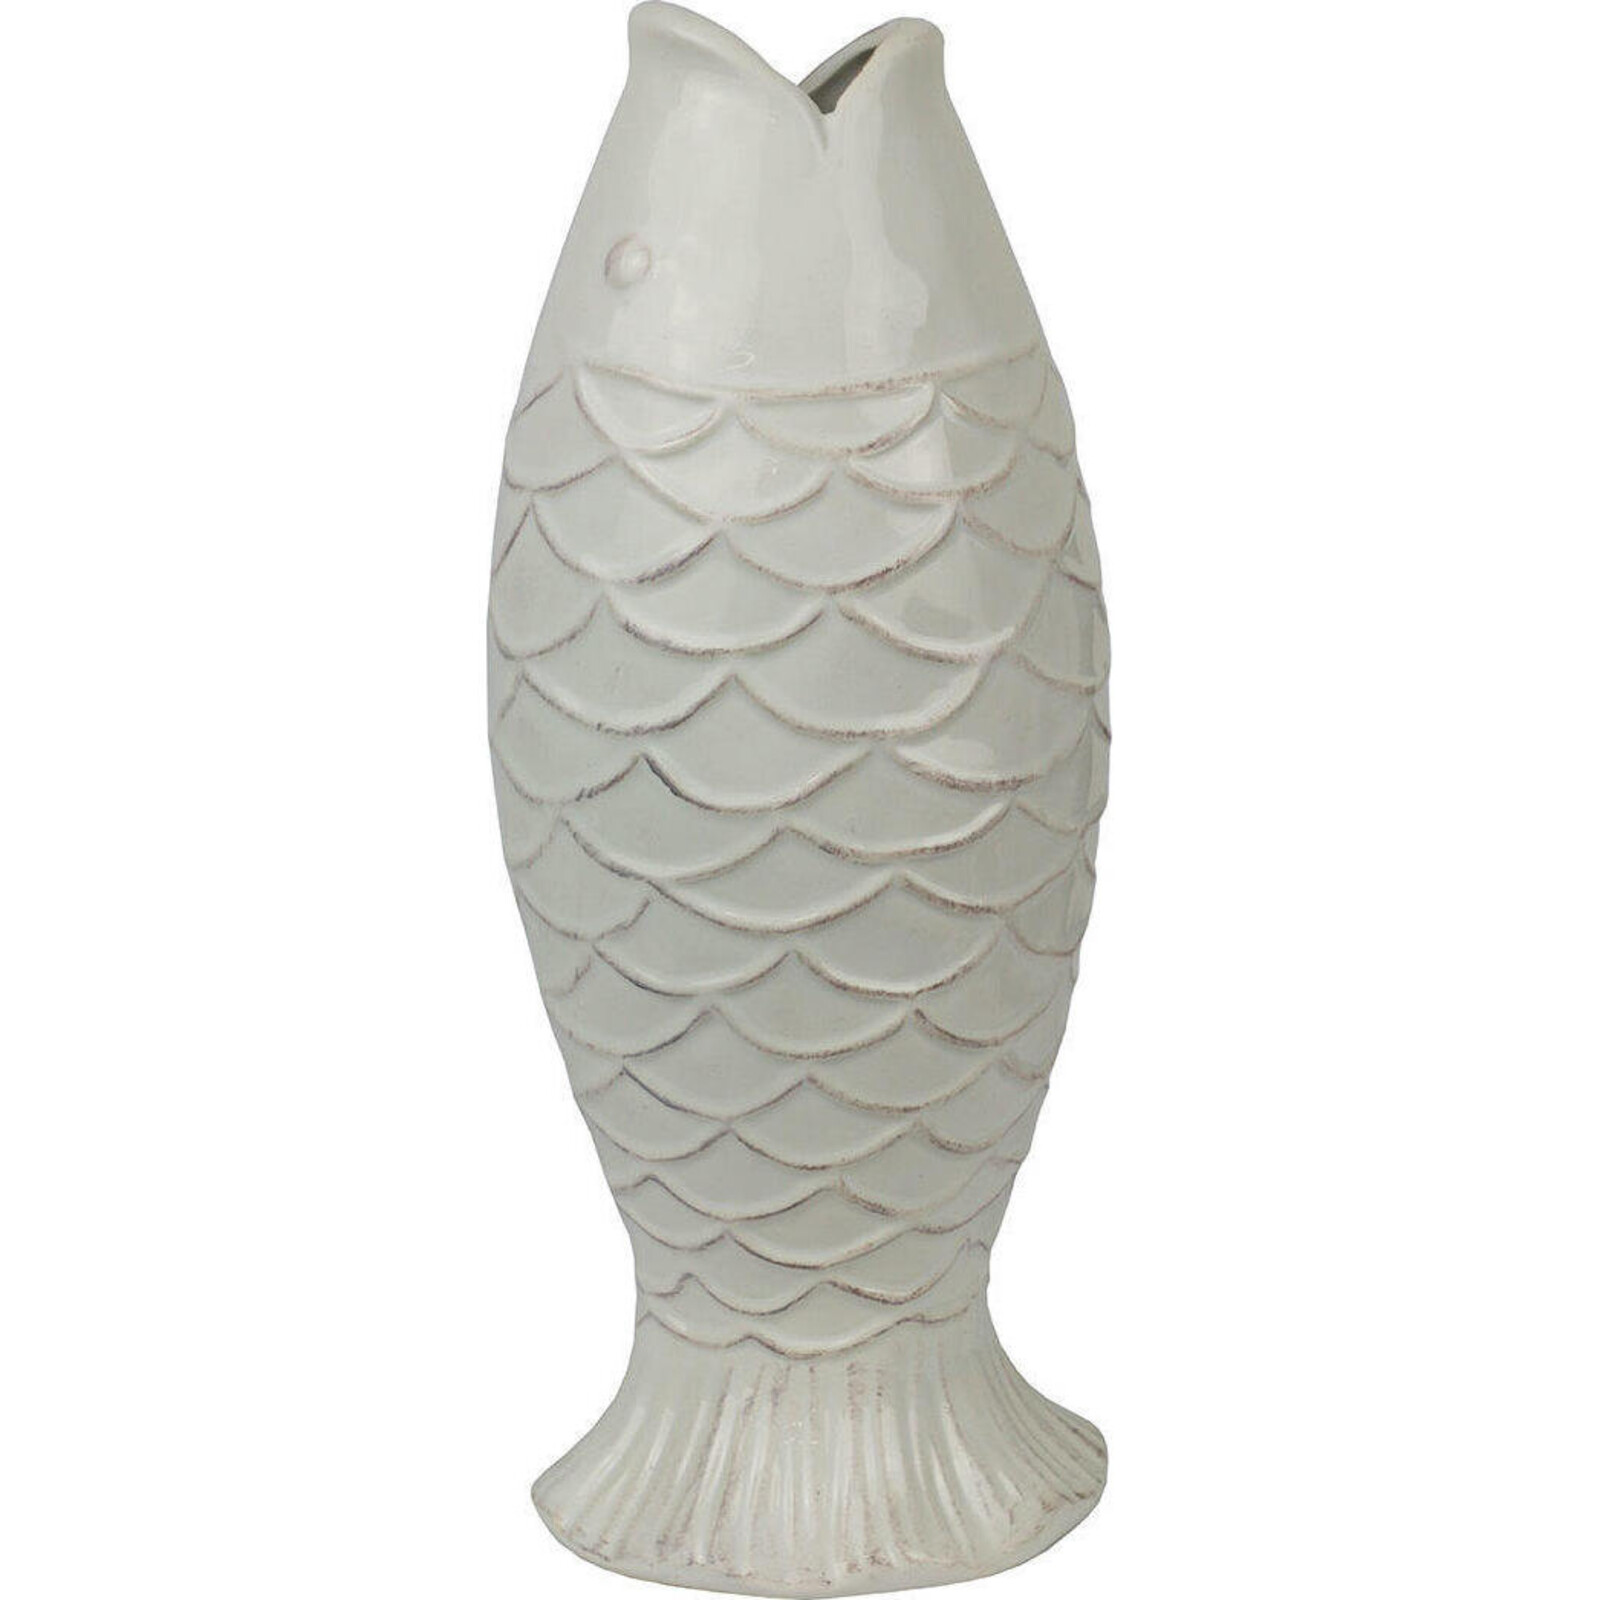 Vase Pesce Large